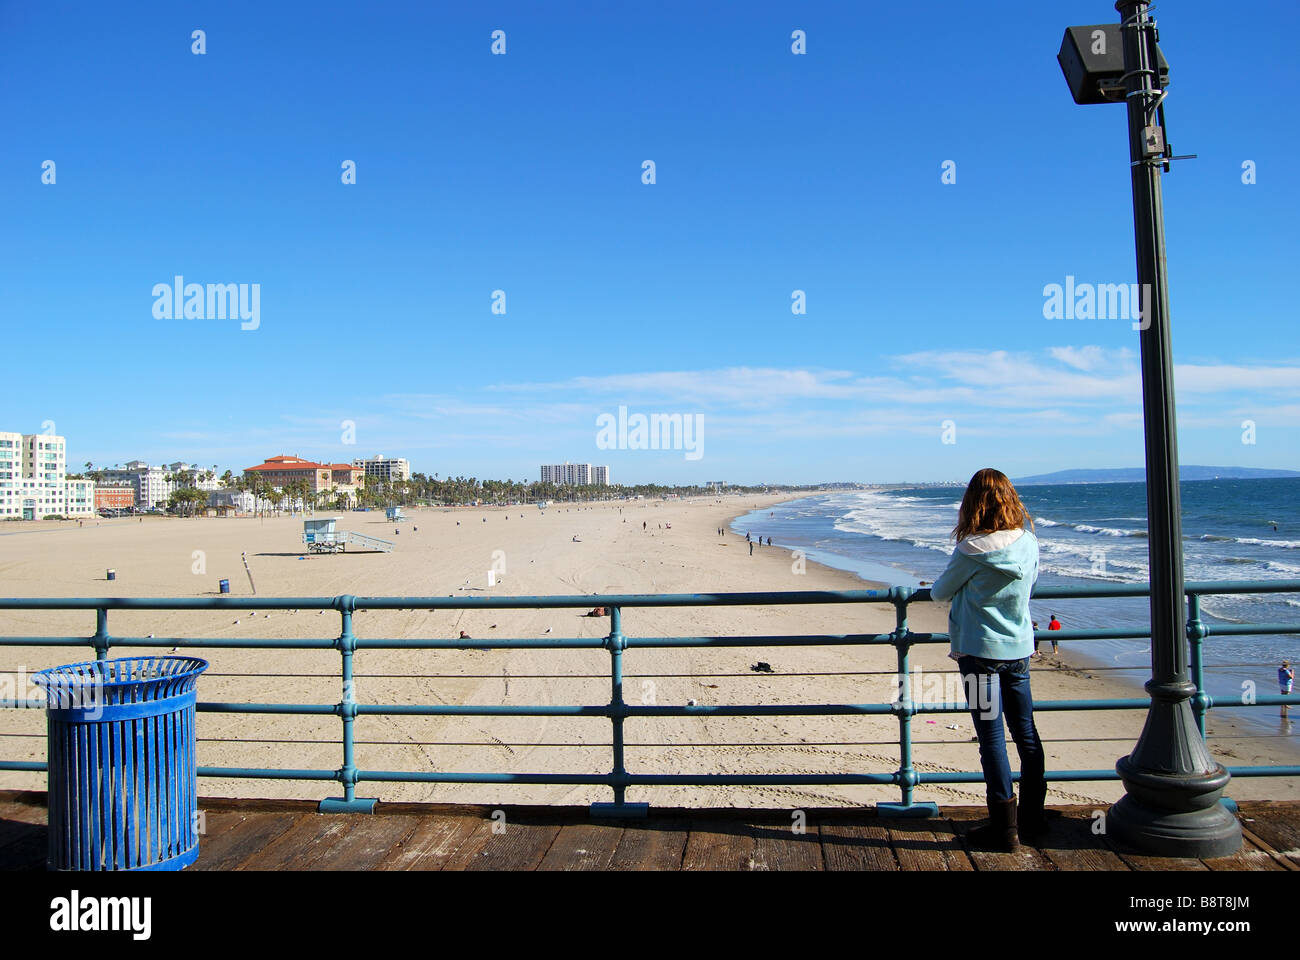 La plage de Santa Monica, Santa Monica, Santa Monica, Los Angeles, Californie, États-Unis d'Amérique Banque D'Images